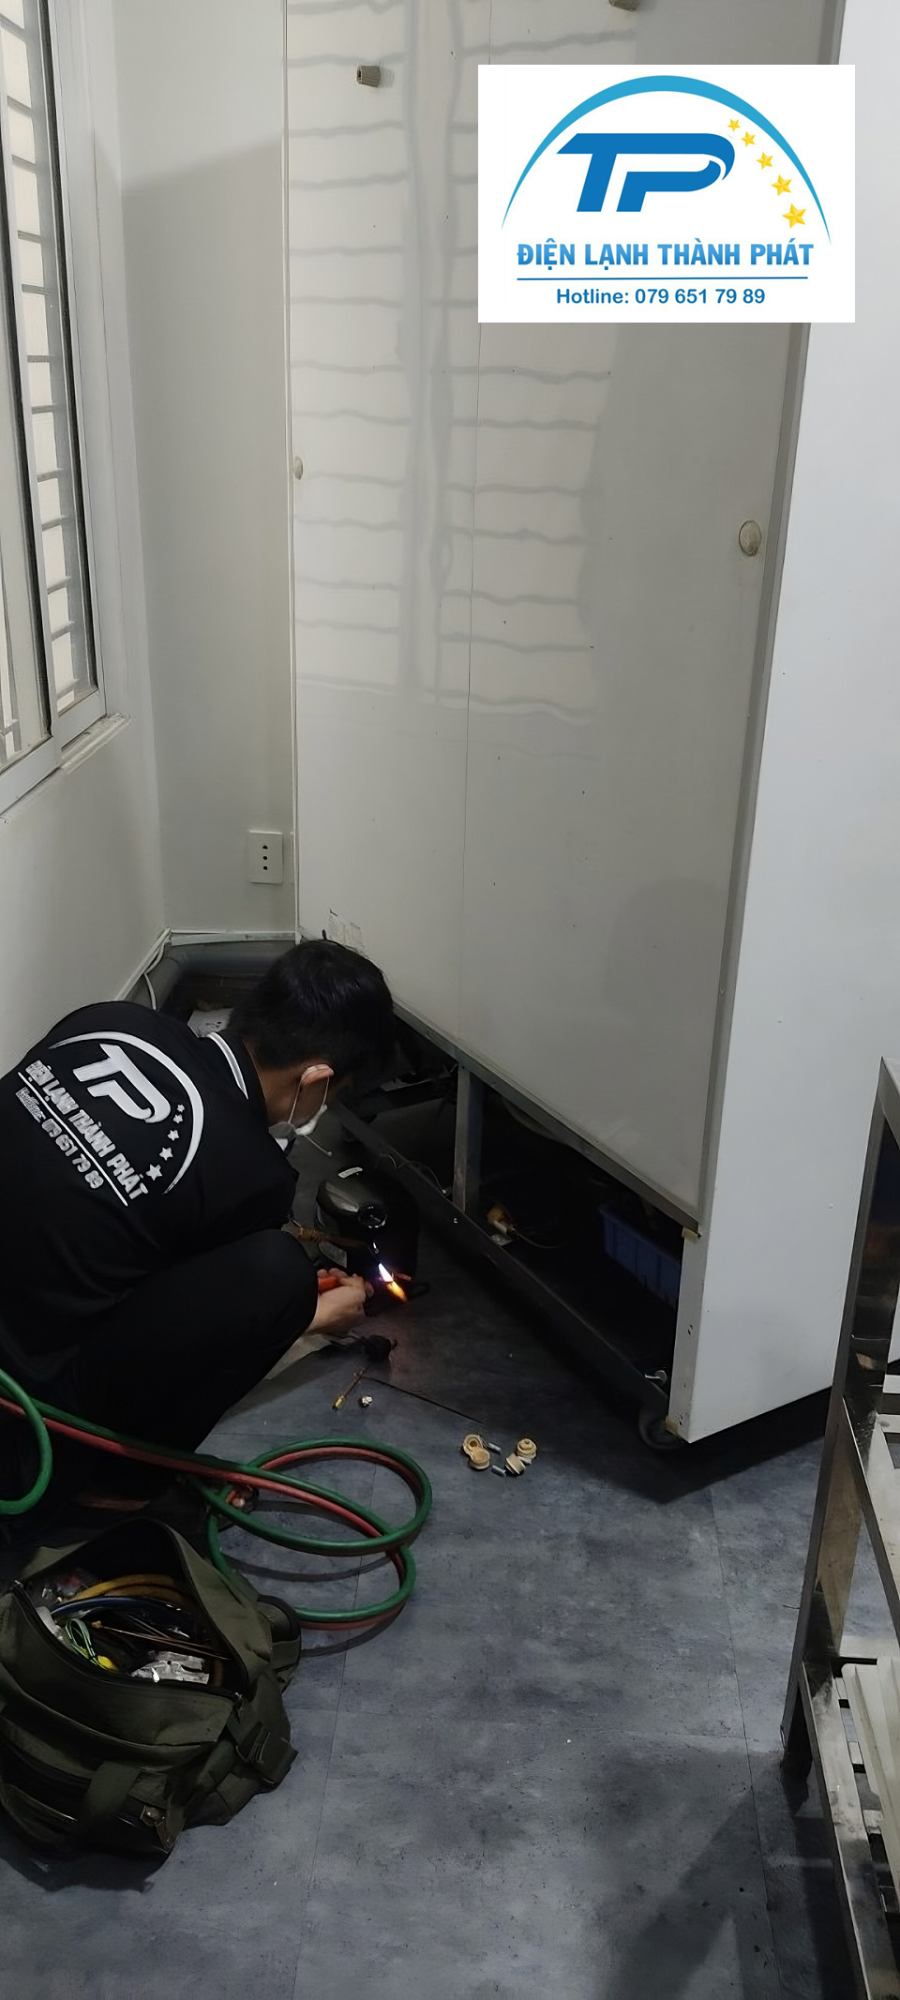 Dịch vụ bơm gas tủ lạnh tại nhà Quận Bình Thạnh Điện lạnh Thành Phát luôn đảm bảo an toàn.